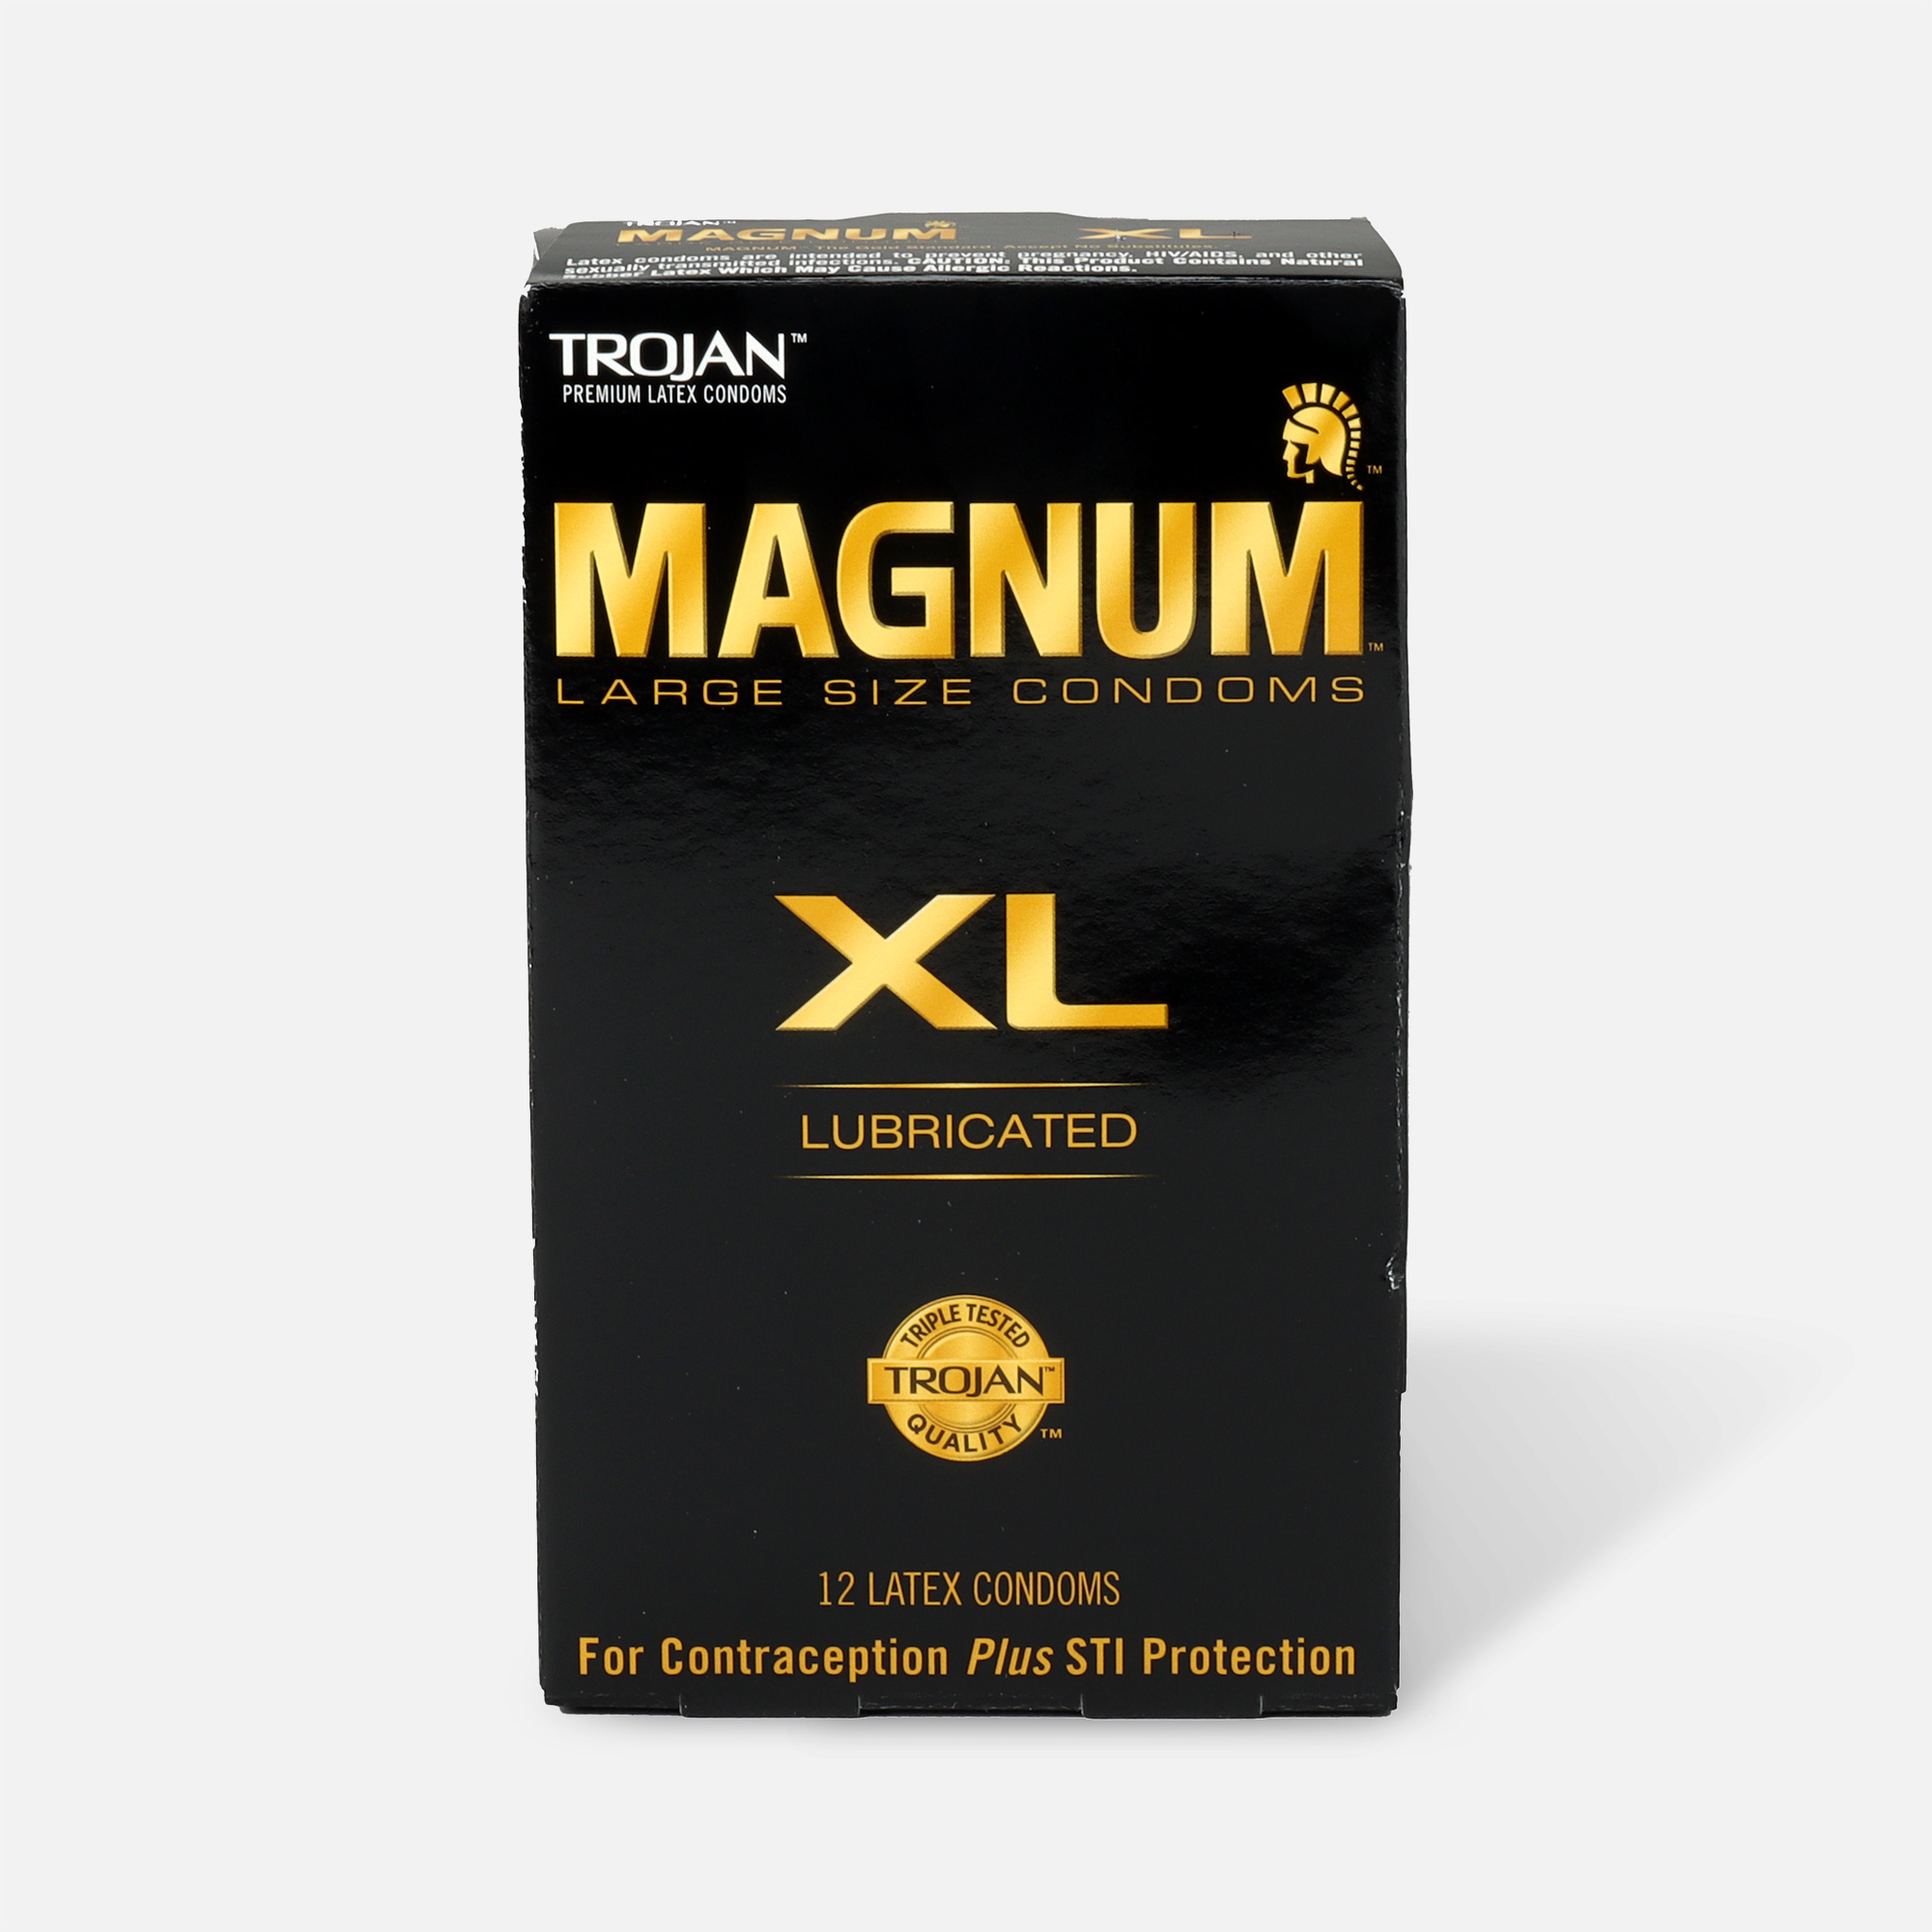 Magnum condom diameter